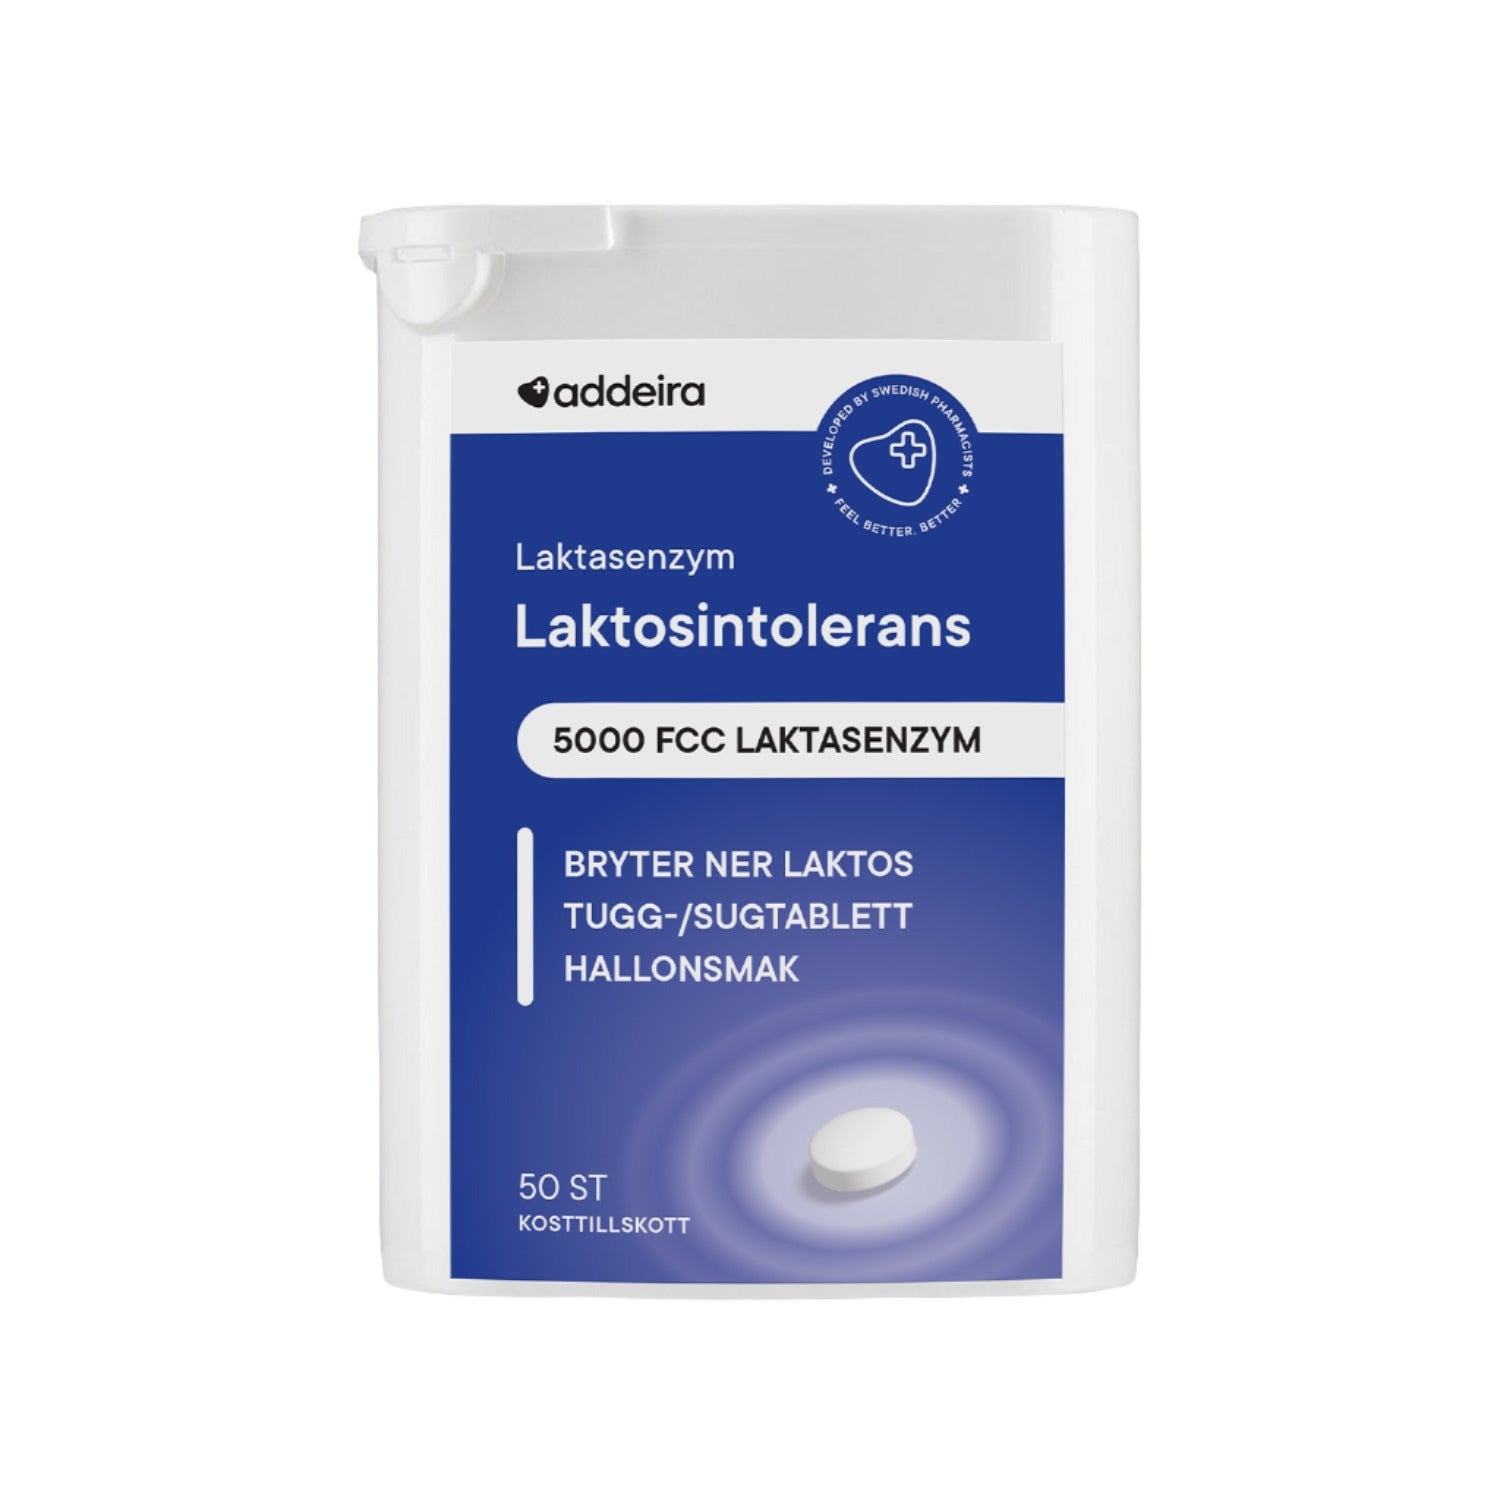 Lactase enzyme chewable tablet for lactose intolerance